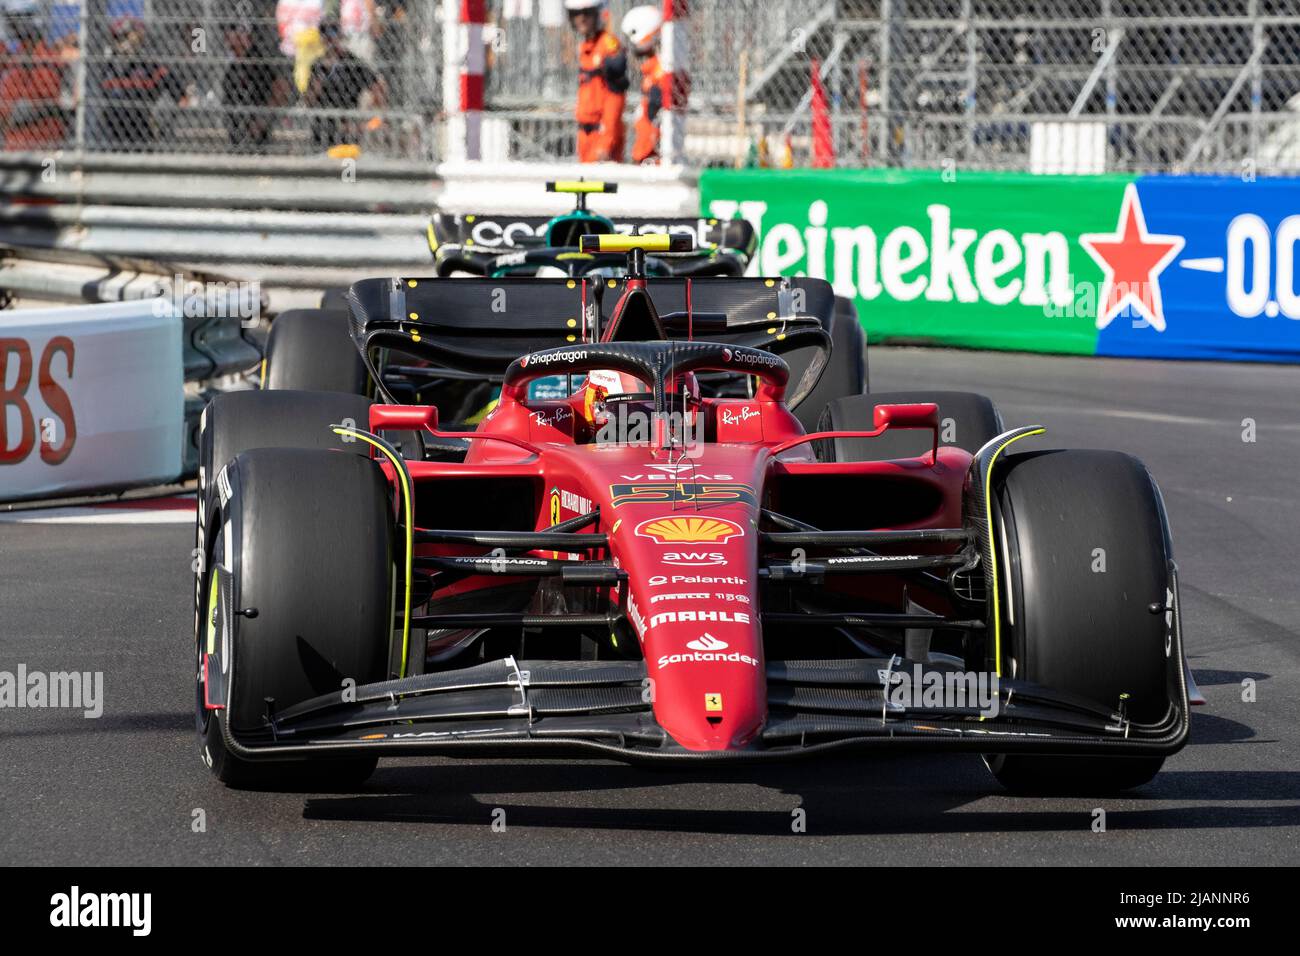 The Formula 1 Grand Prix in Montecarlo MonacoGP F1 Stock Photo